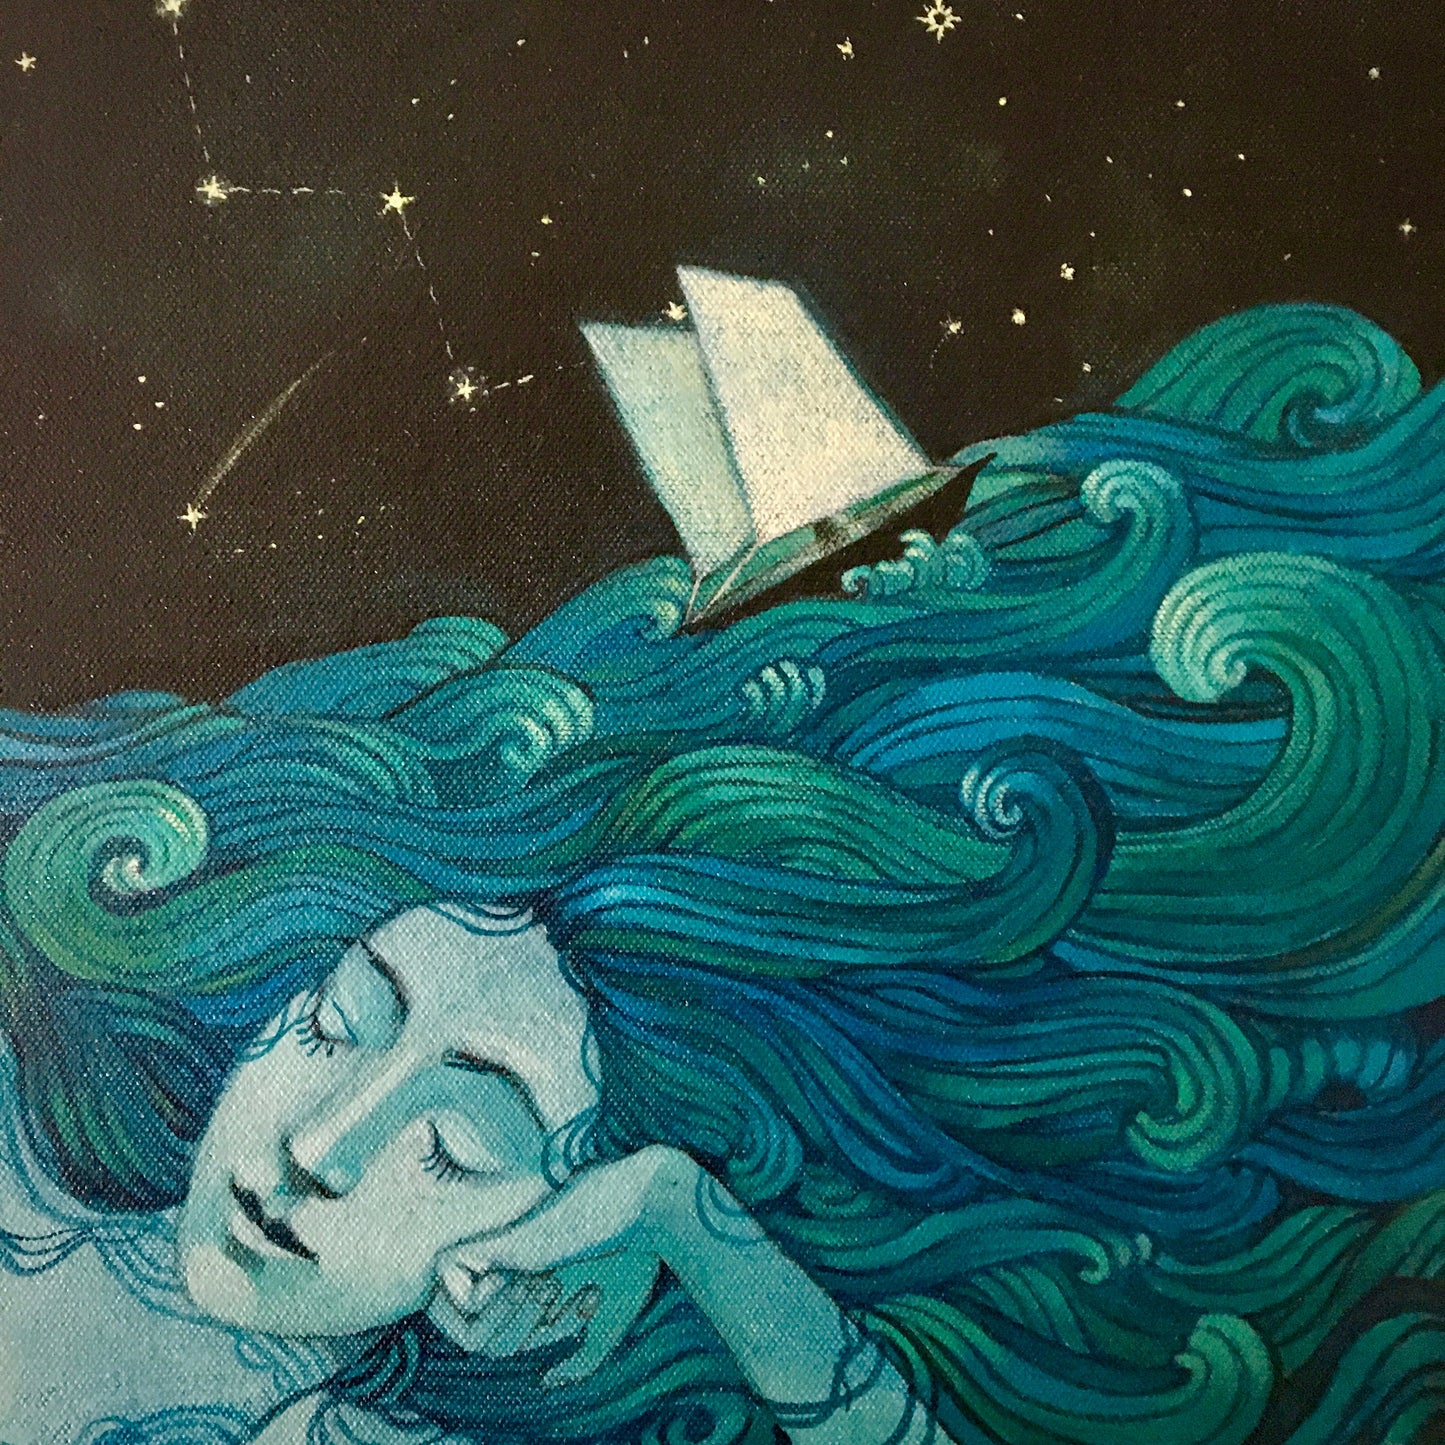 "My mind is an ocean" 12 inch print